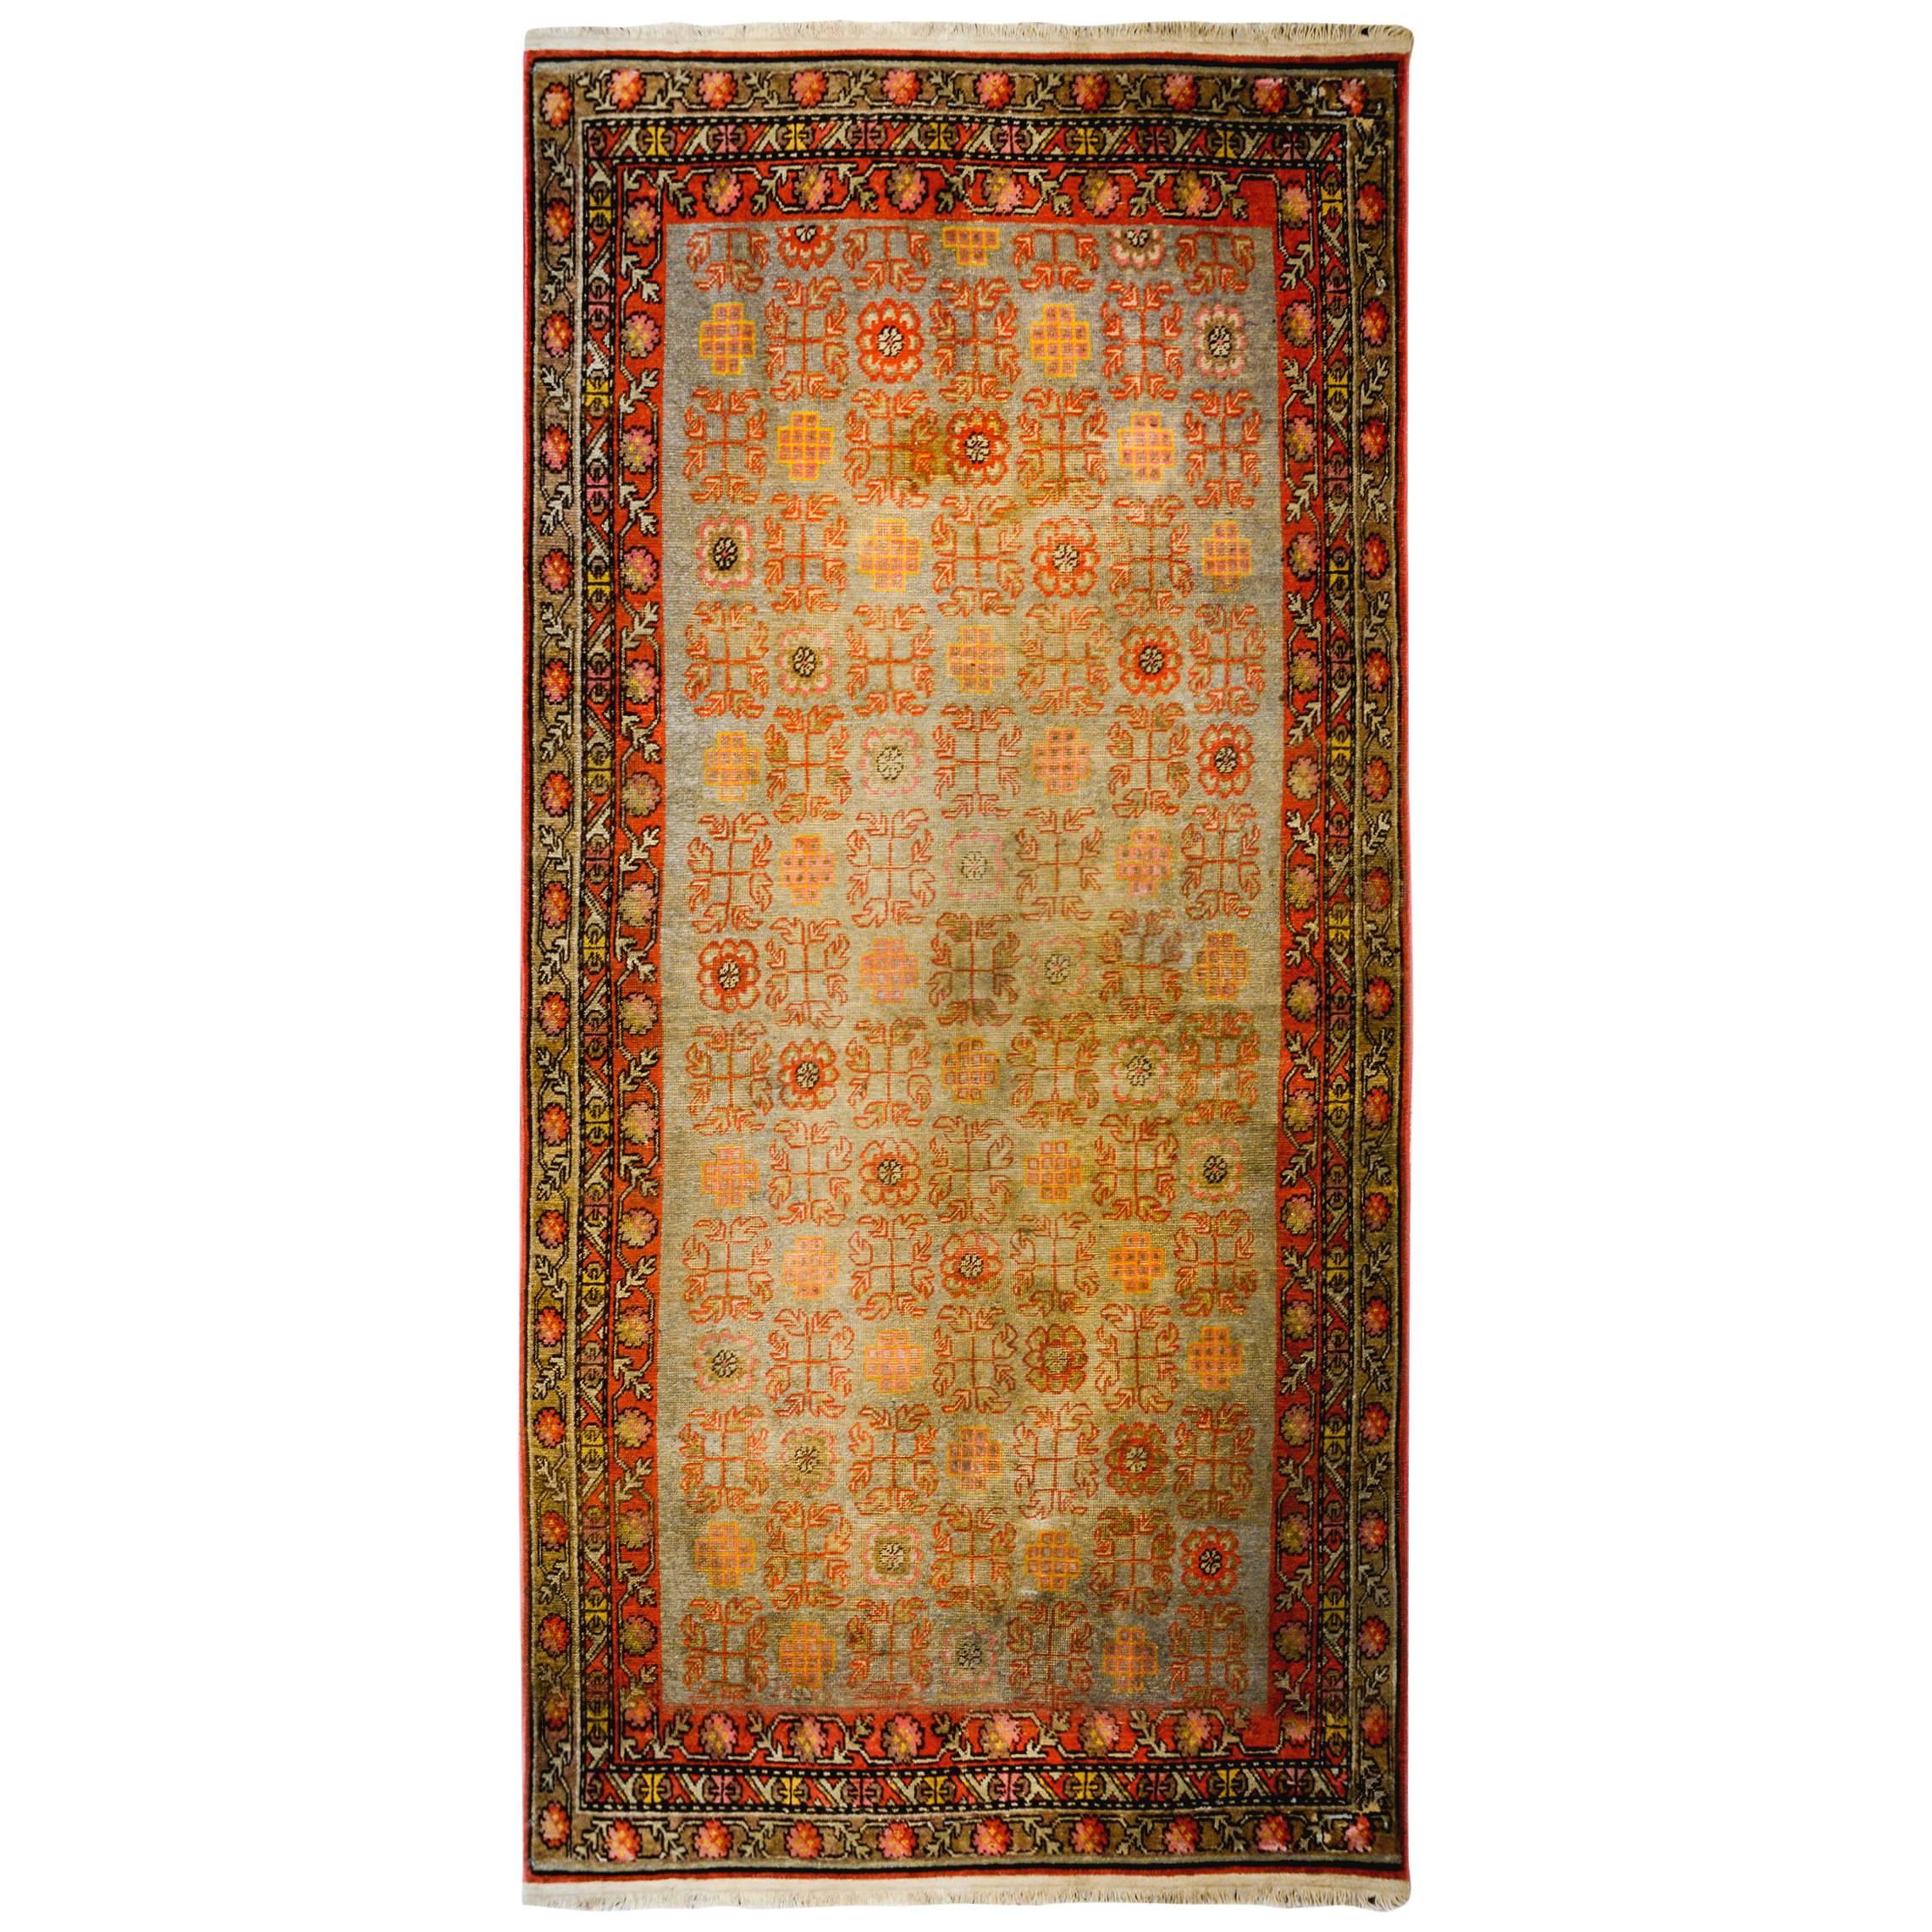 Merveilleux tapis Khotan du début du XXe siècle